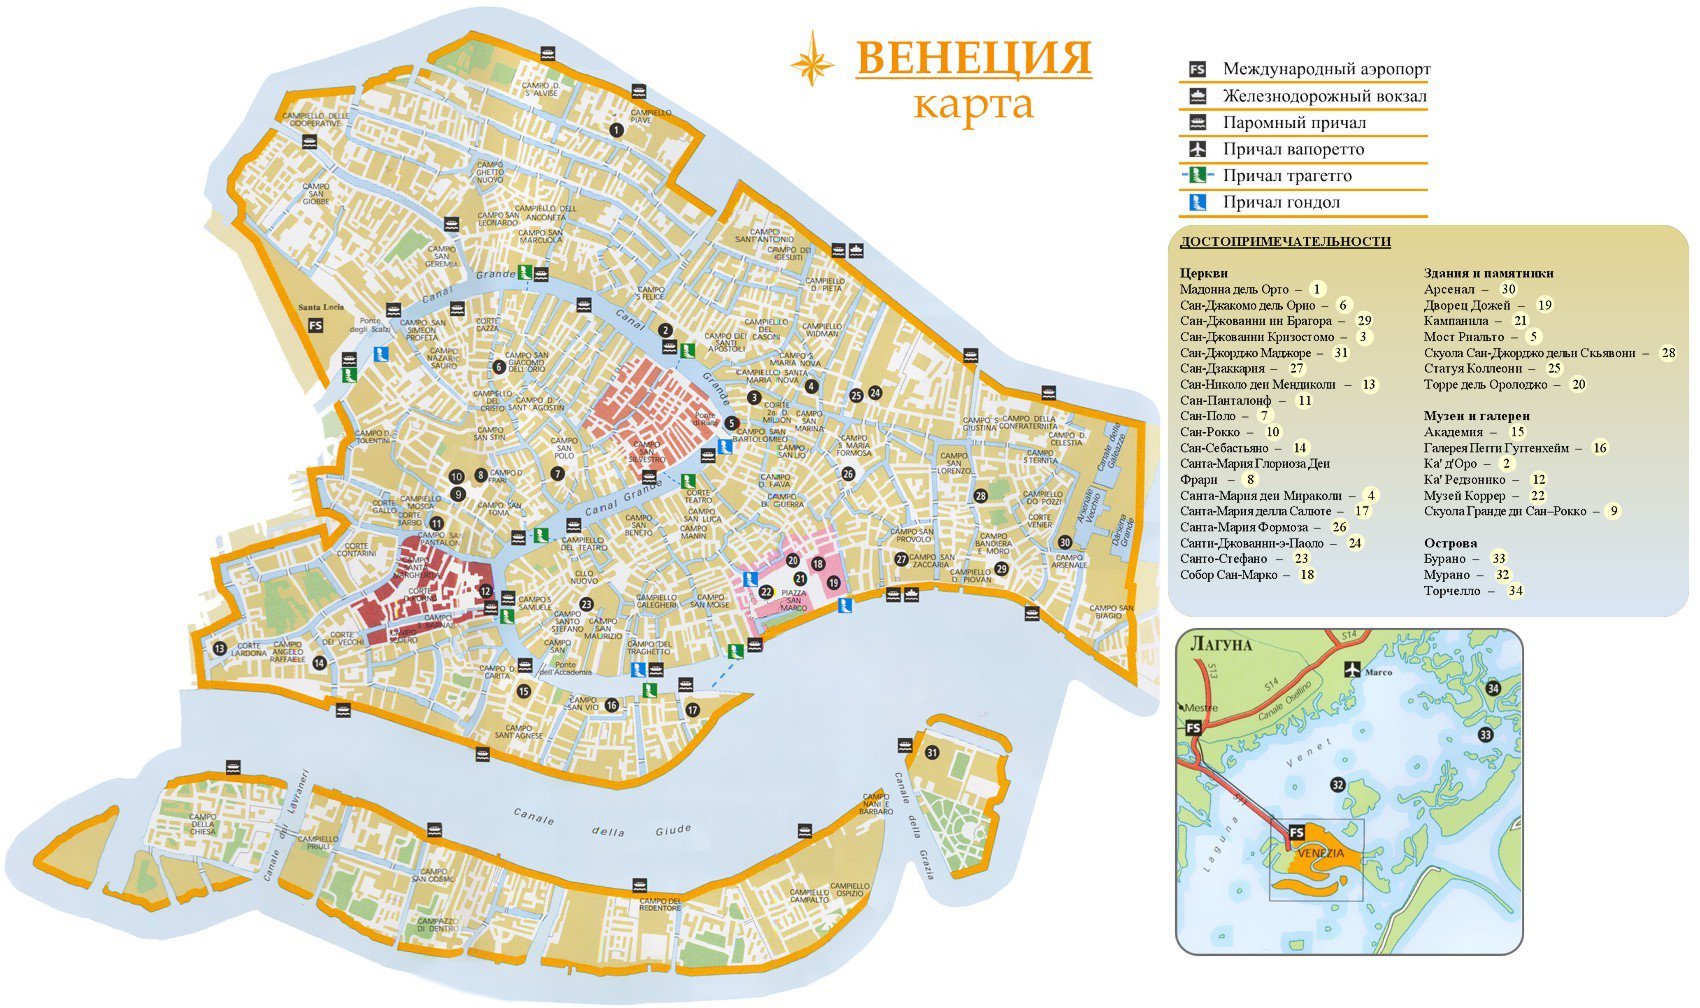 Карты Венеции (Италия). Подробная карта Венеции на русском языке с отелямии достопримечательностями